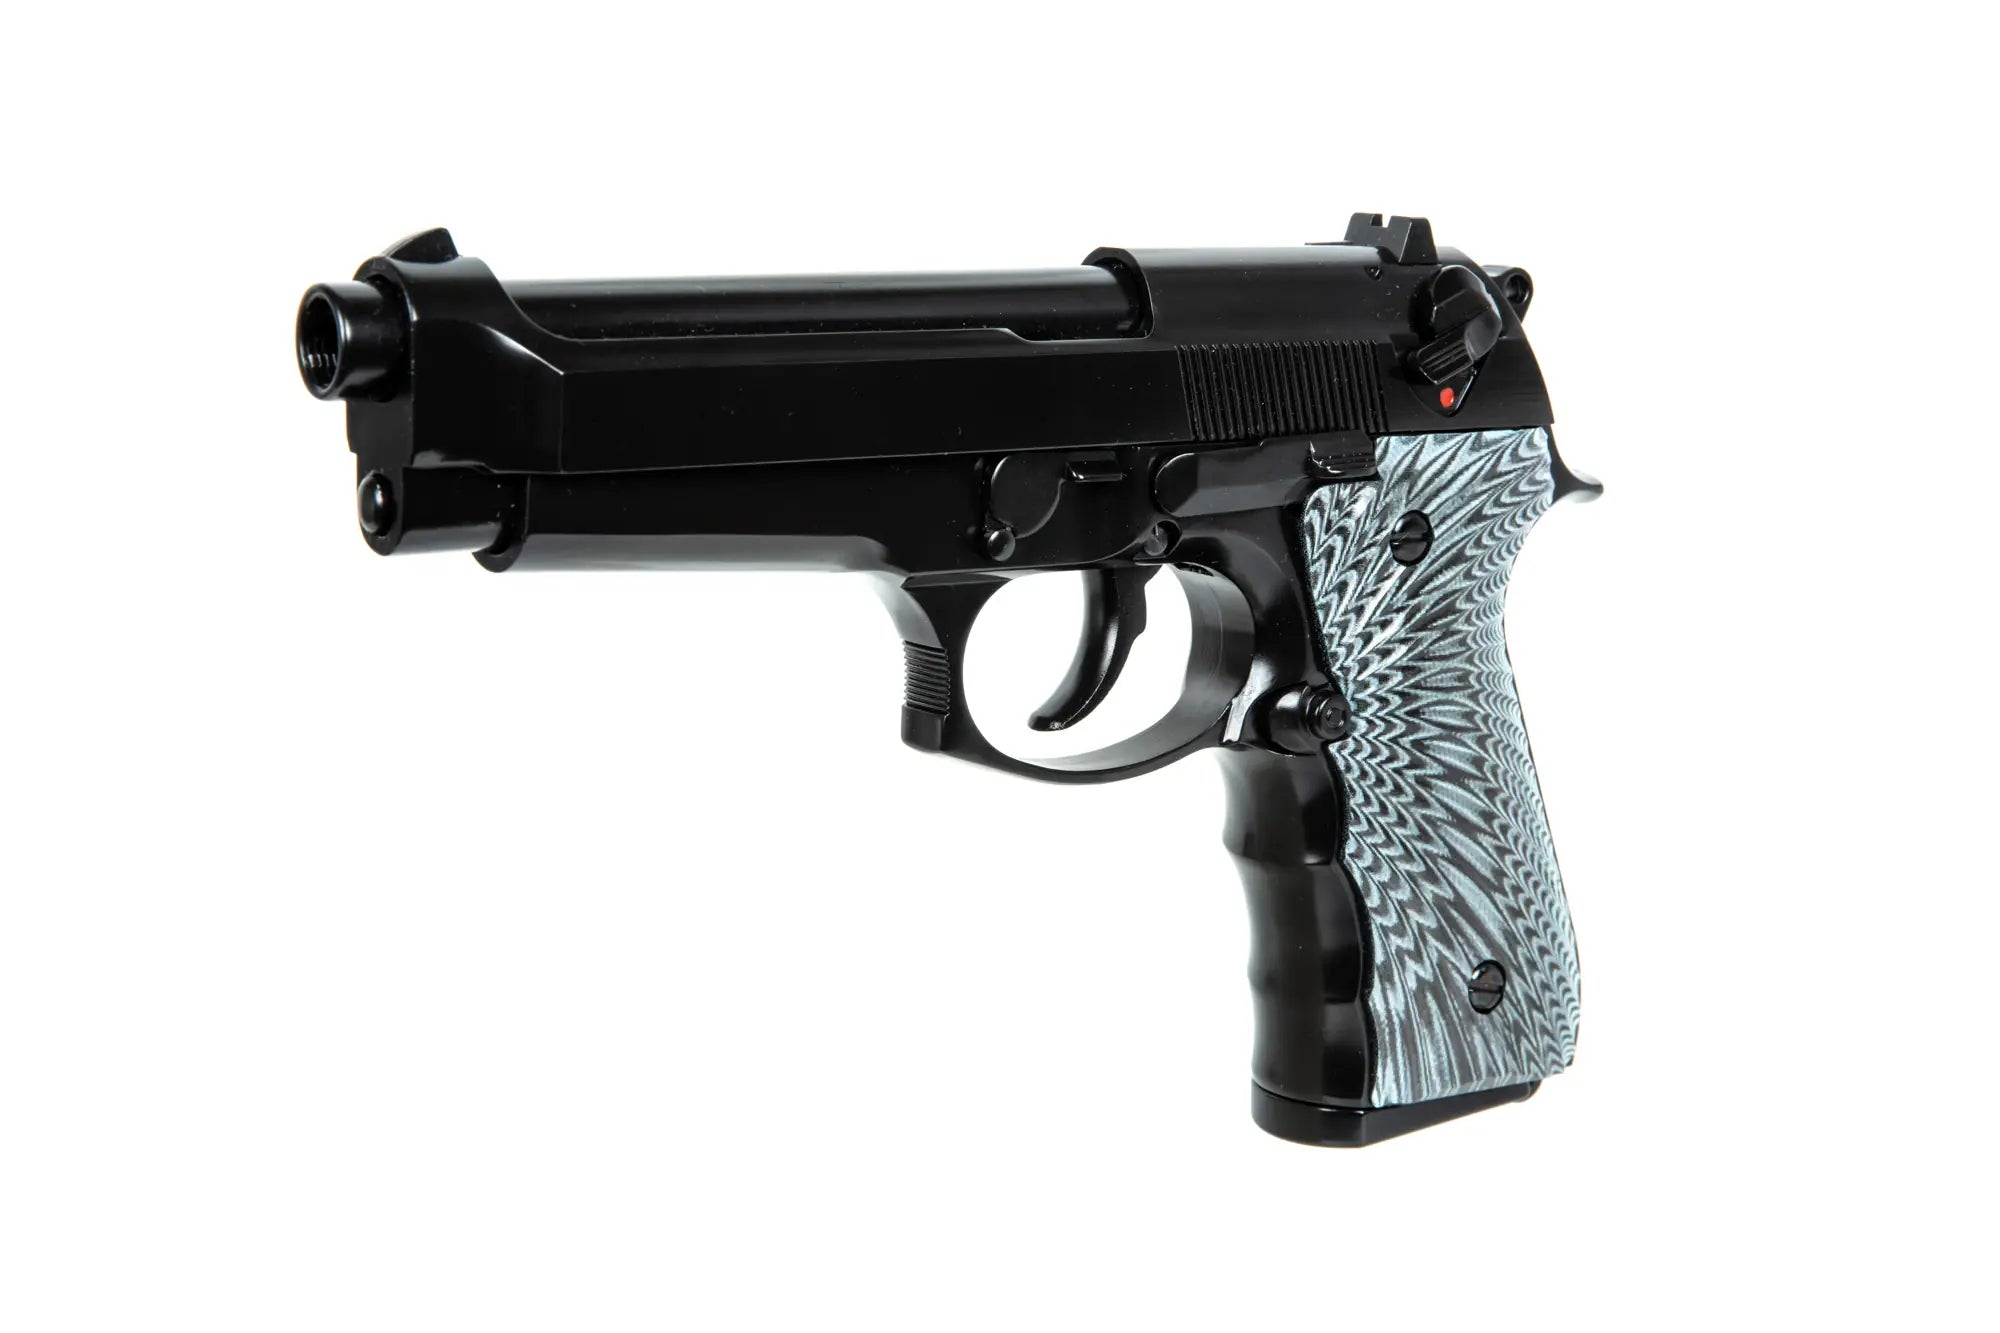 M92 EAGLE gas pistol replica - Black-1